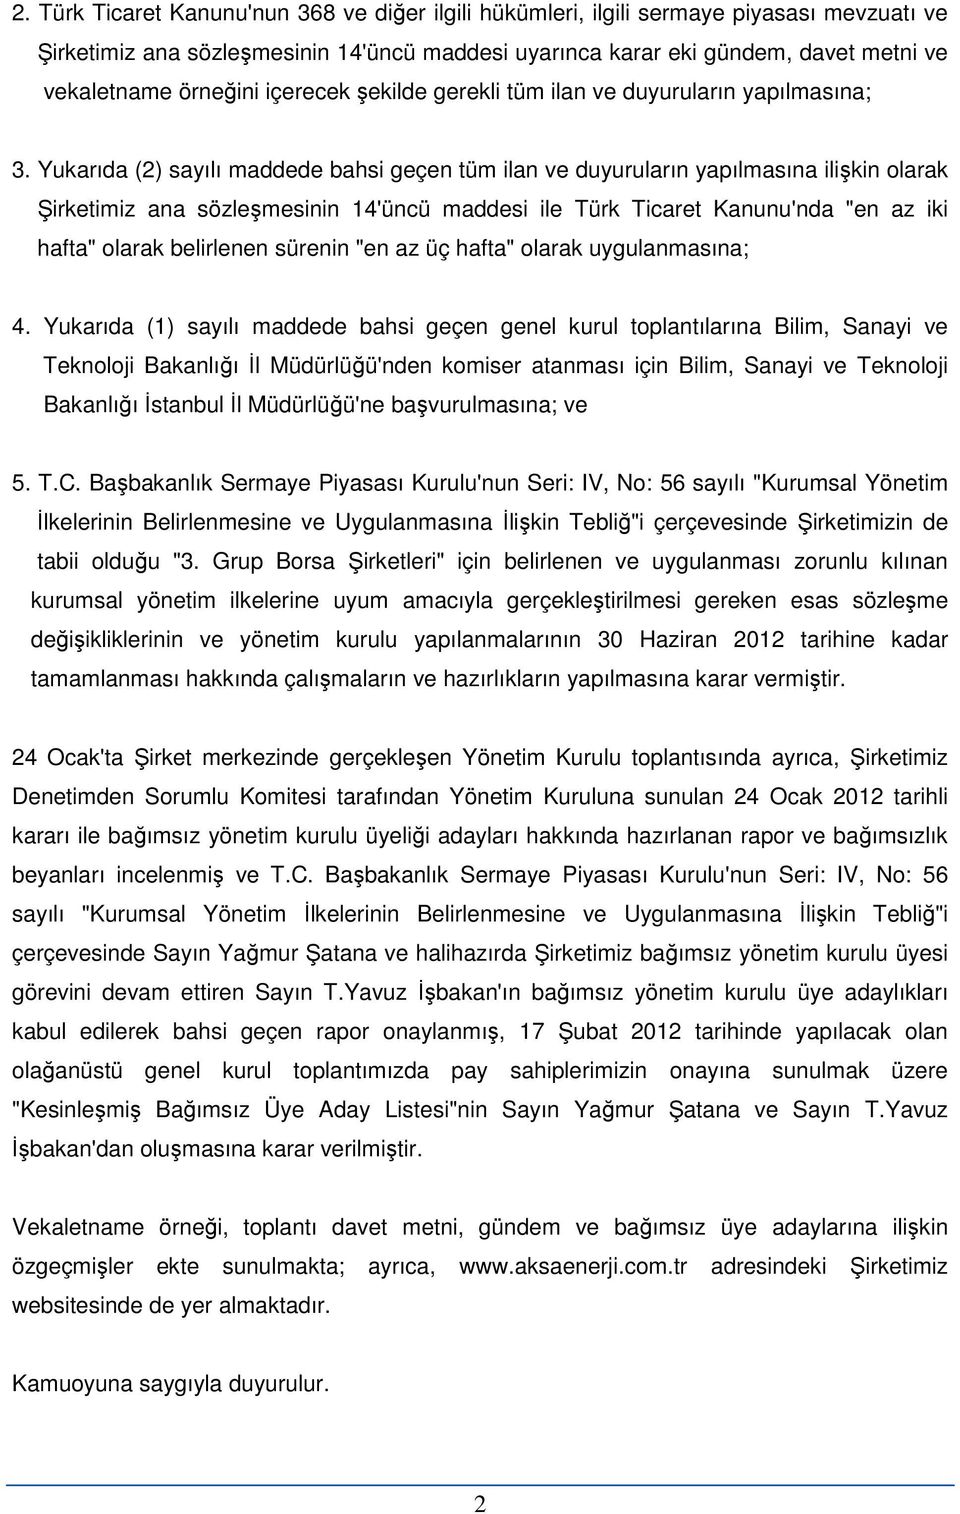 Yukarıda (2) sayılı maddede bahsi geçen tüm ilan ve duyuruların yapılmasına ilişkin olarak Şirketimiz ana sözleşmesinin 14'üncü maddesi ile Türk Ticaret Kanunu'nda "en az iki hafta" olarak belirlenen